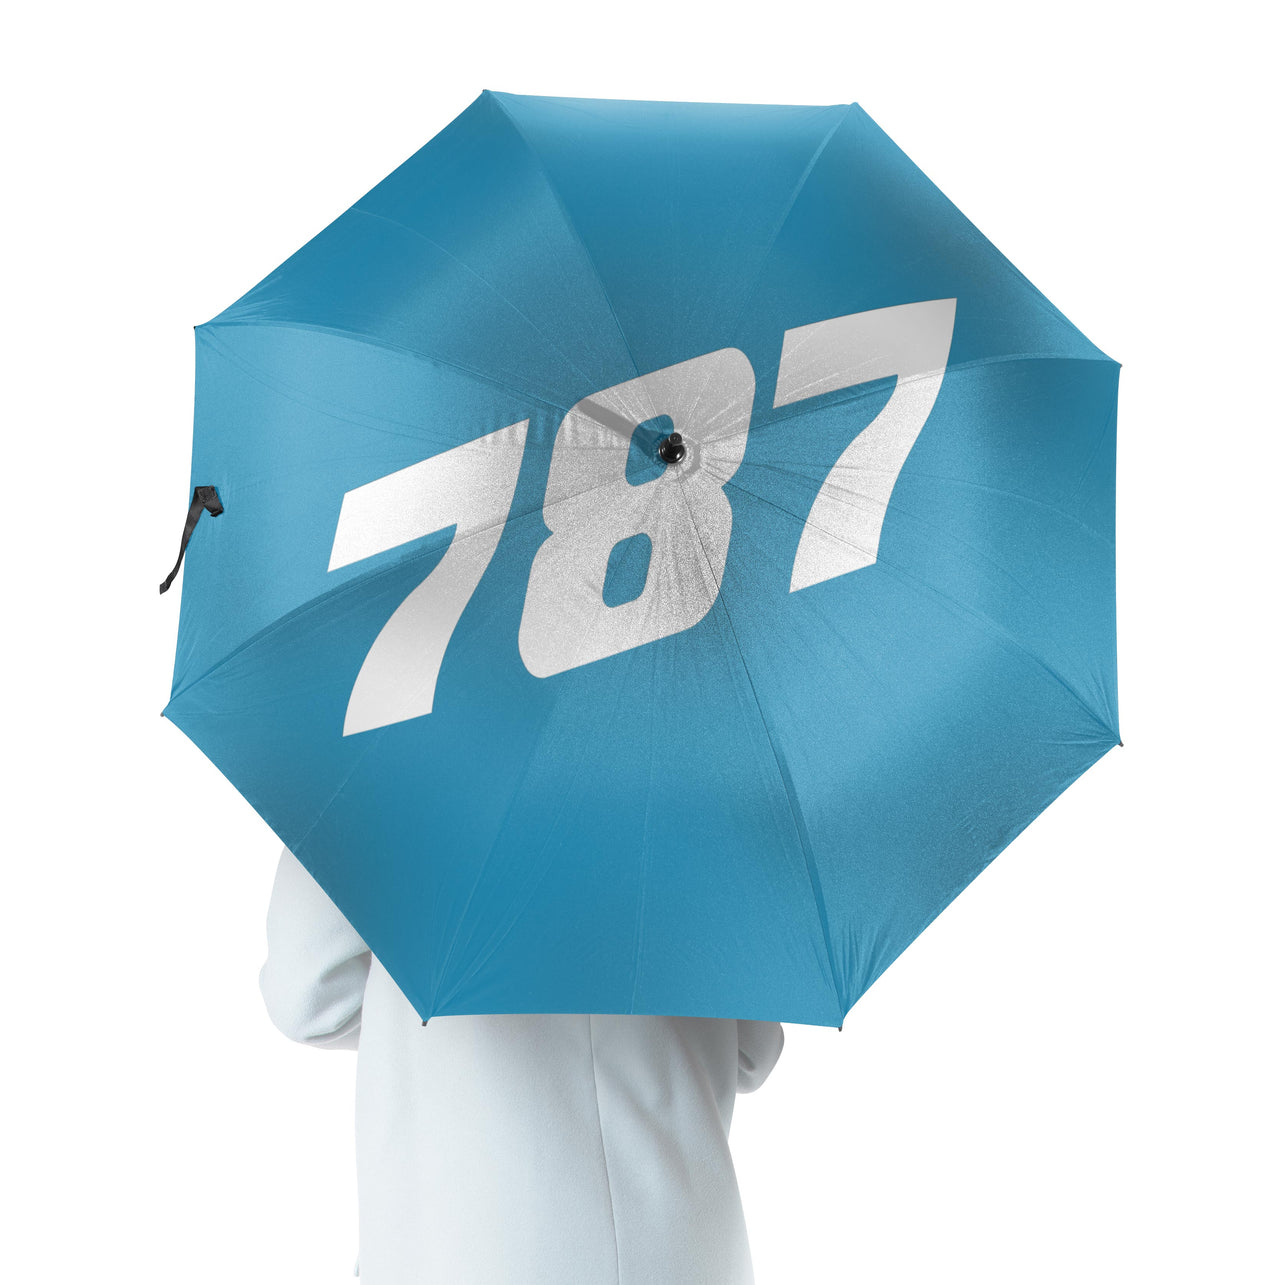 787 Flat Text Designed Umbrella